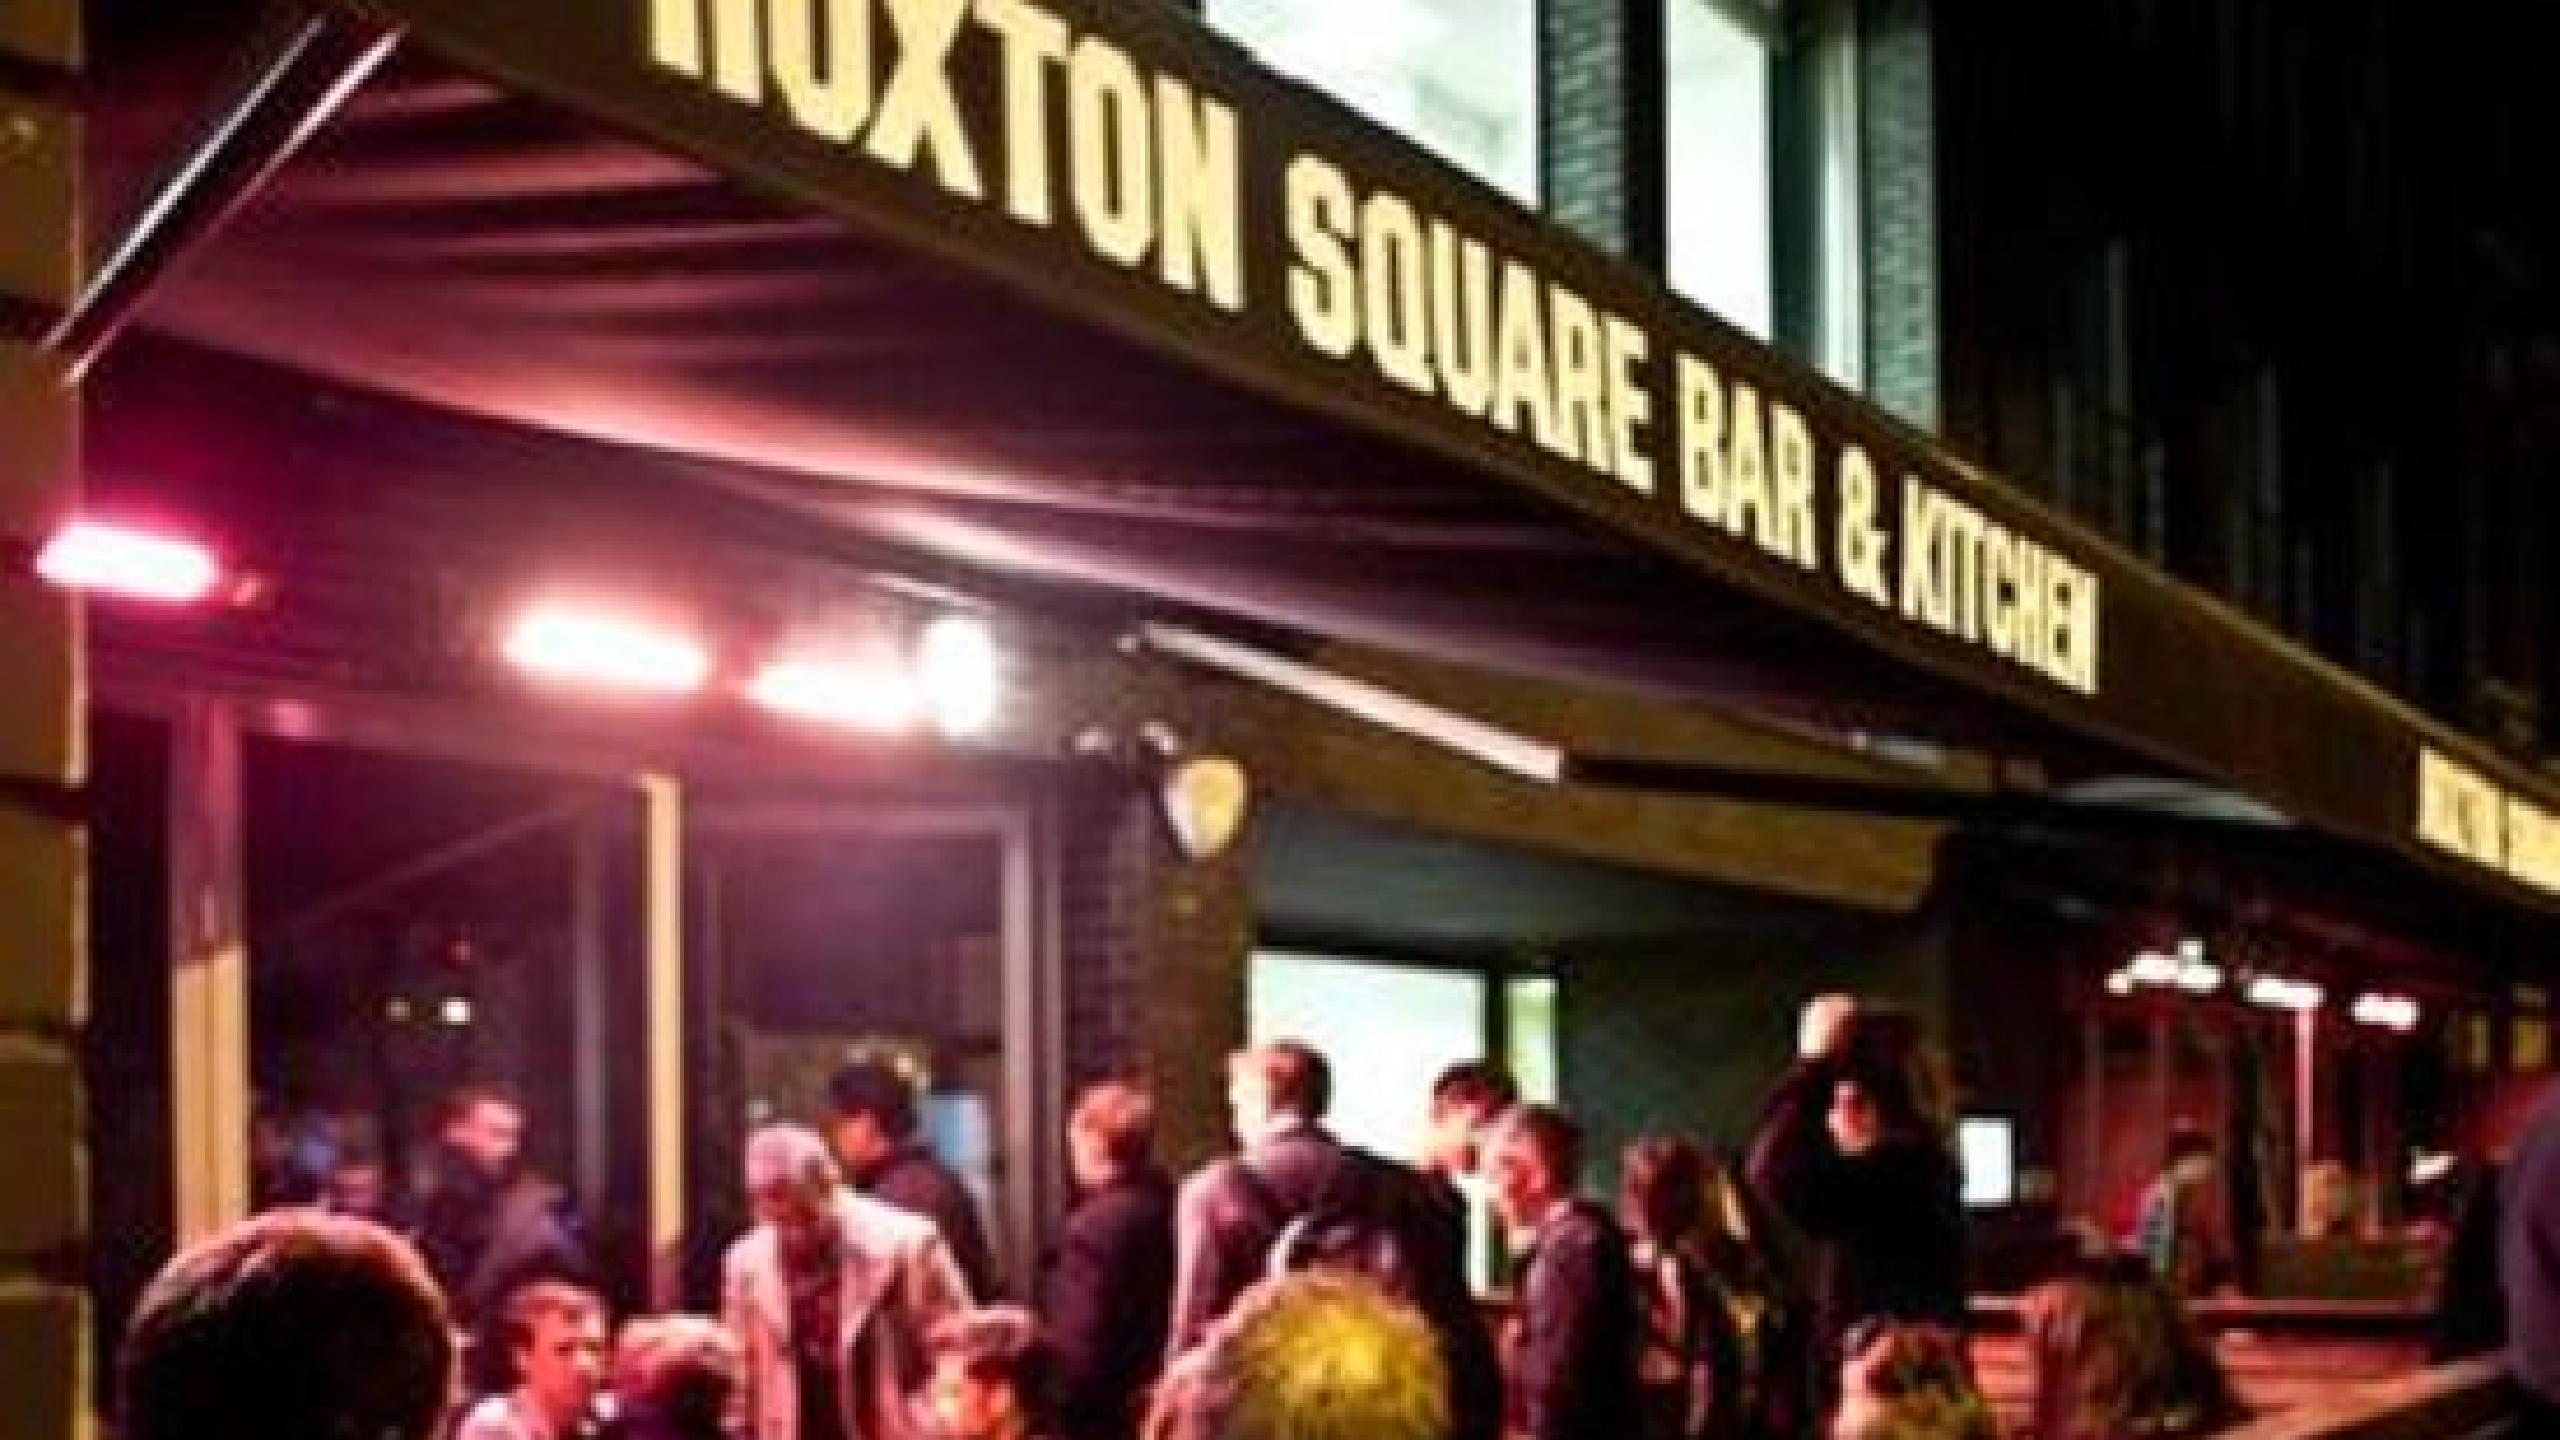 hoxton square bar and kitchen food menu